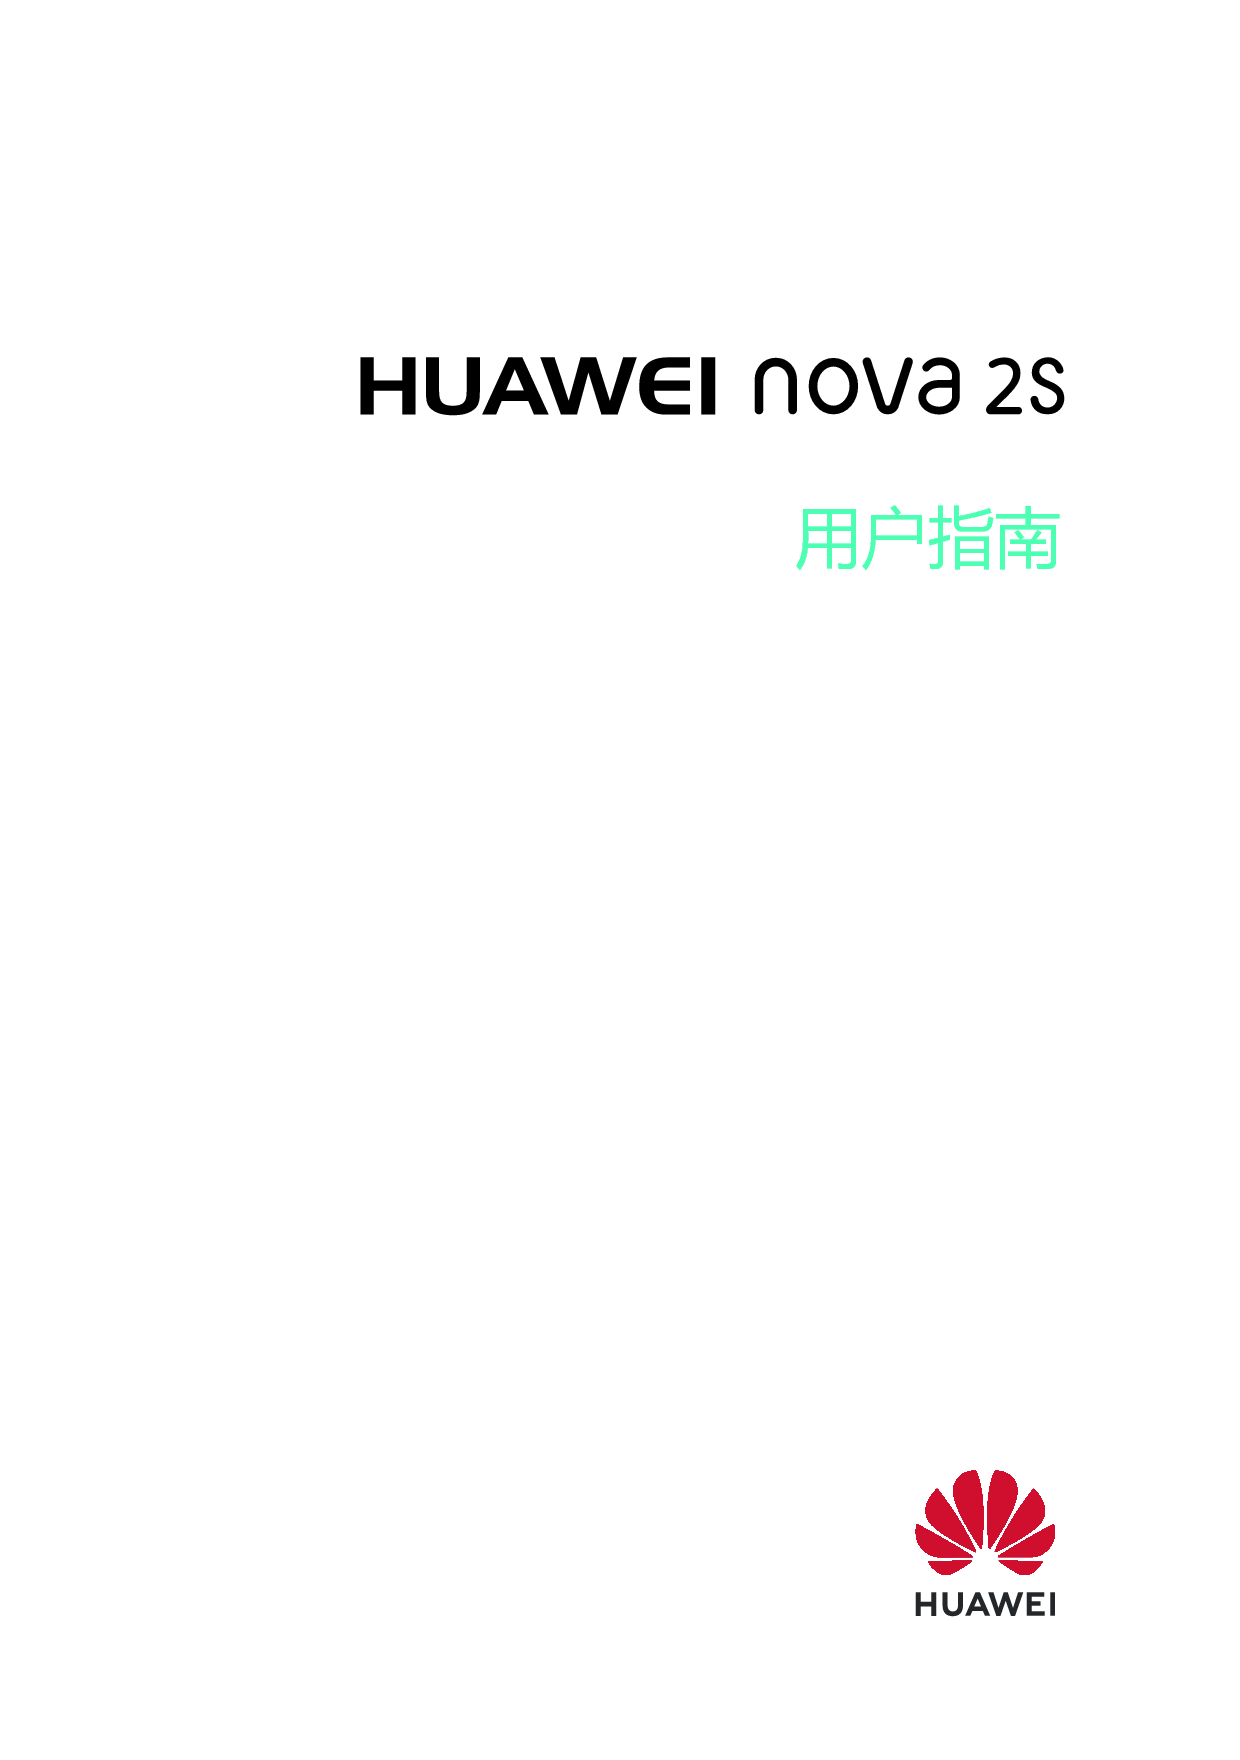 华为 Huawei NOVA 2S EMUI9.0 用户指南 封面